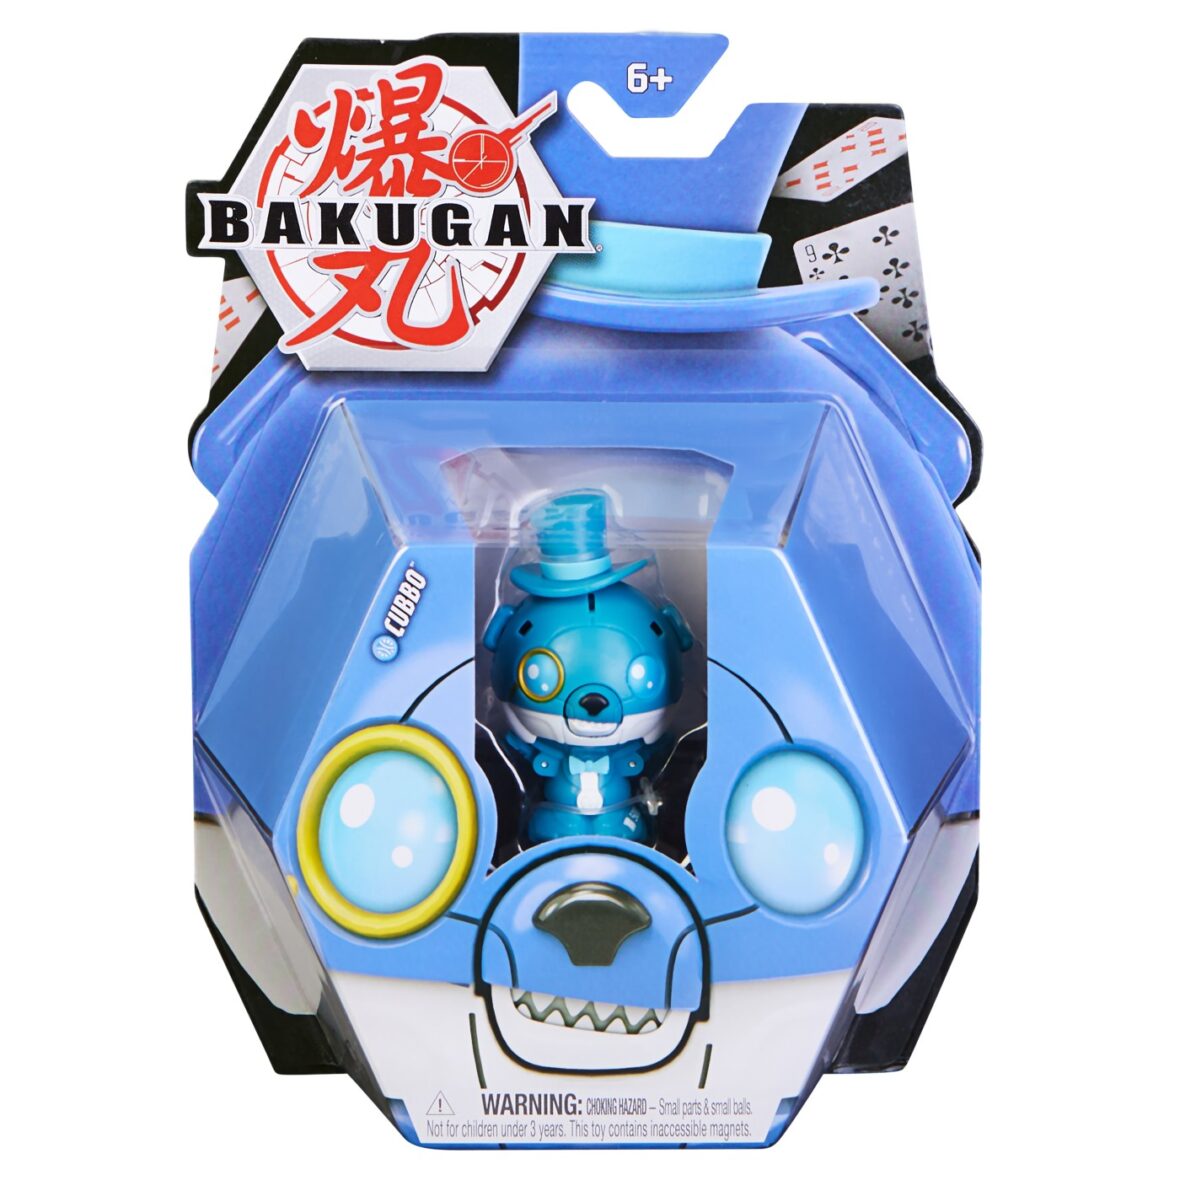 Bakugan Cubbo Magic Blue